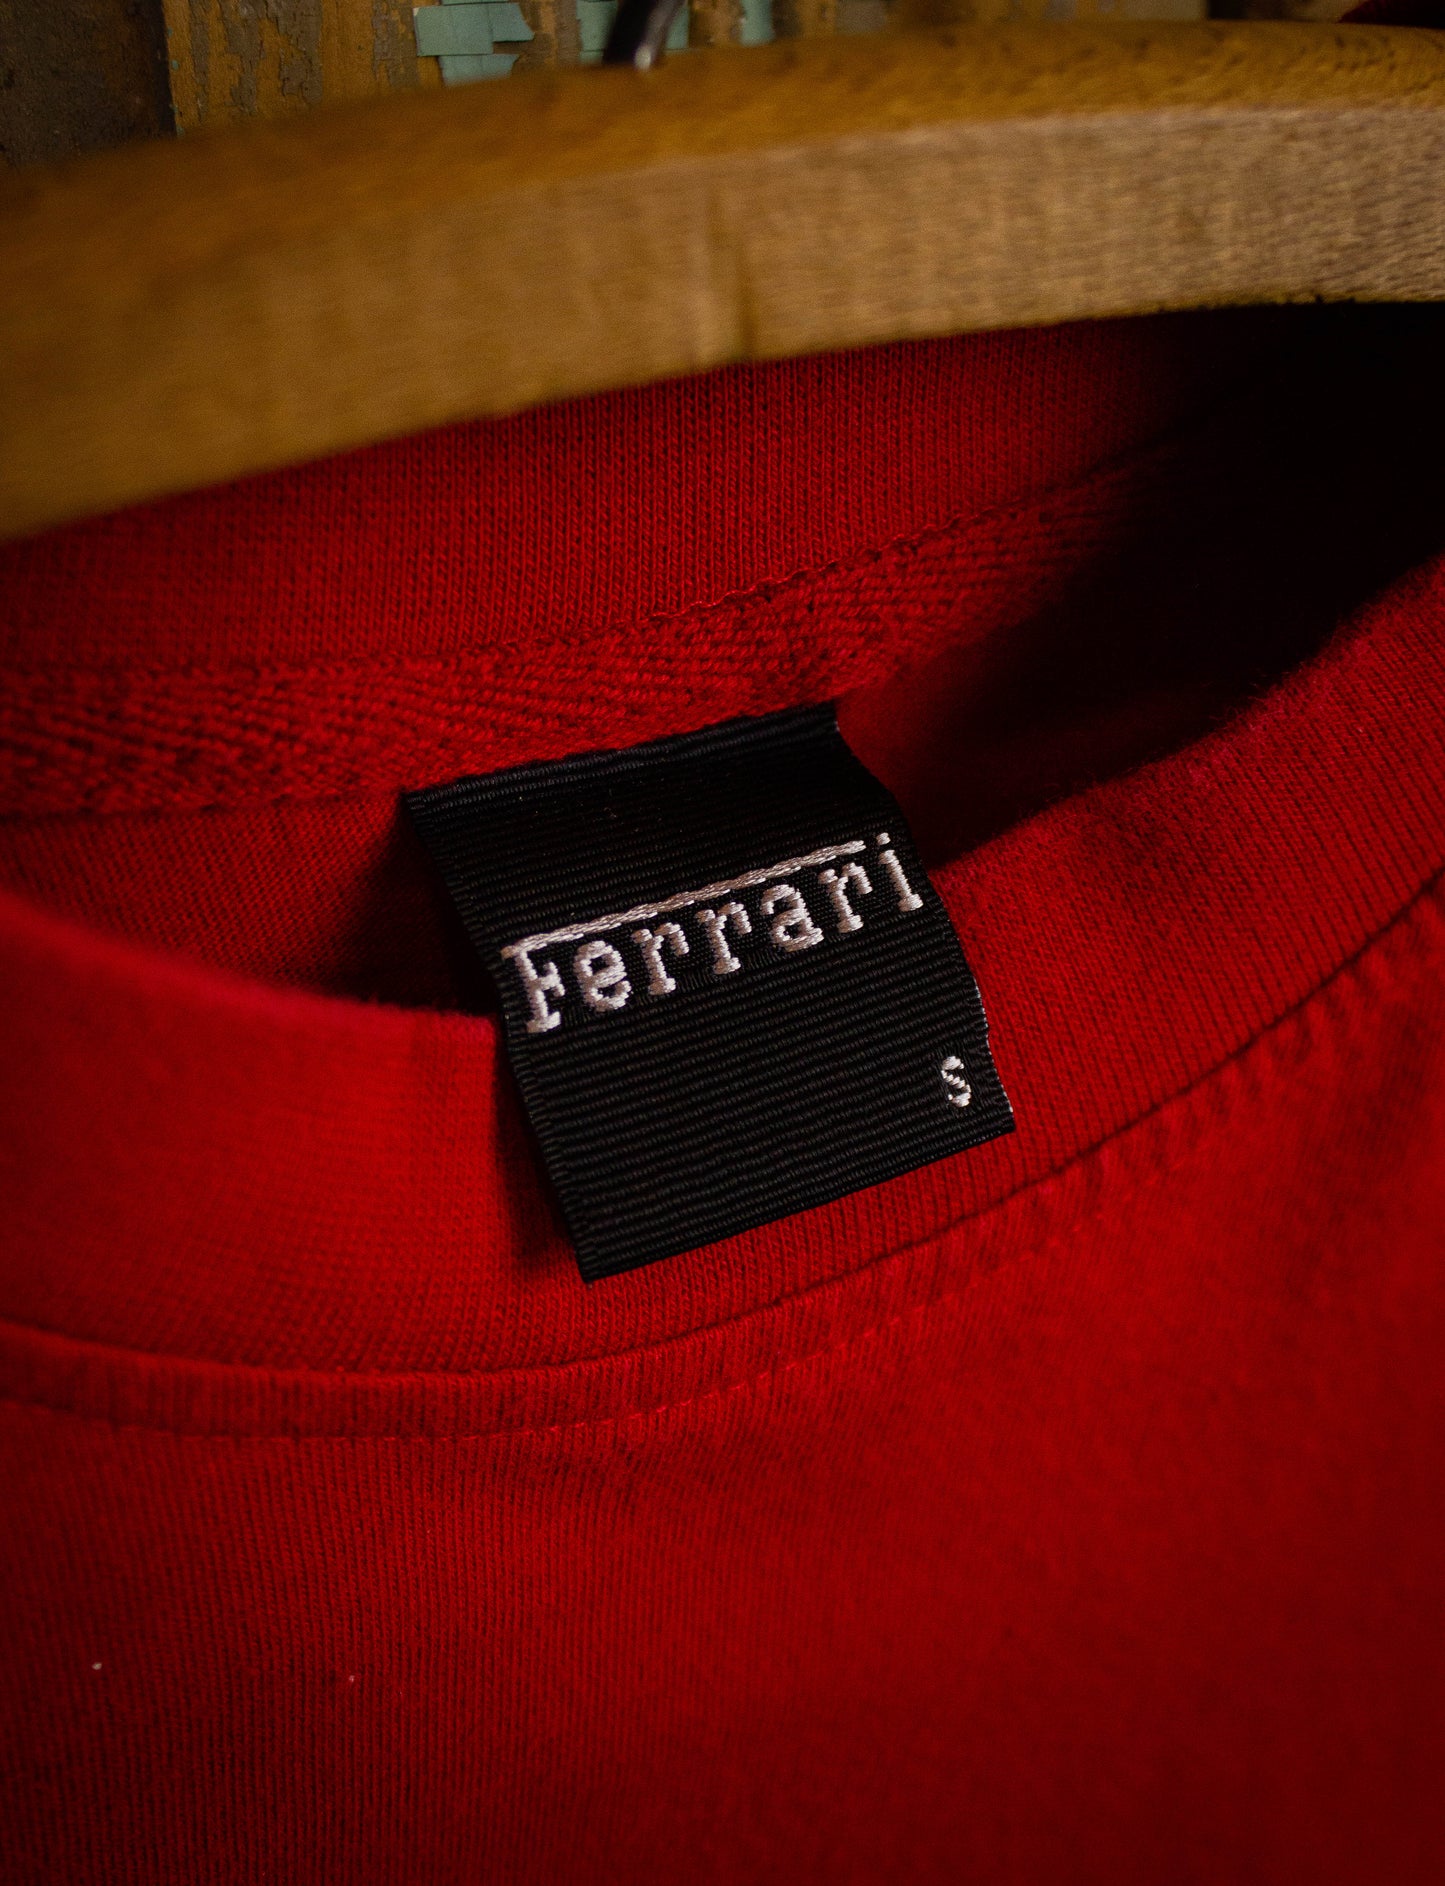 Vintage Ferrari Graphic T Shirt 2002 Red Medium